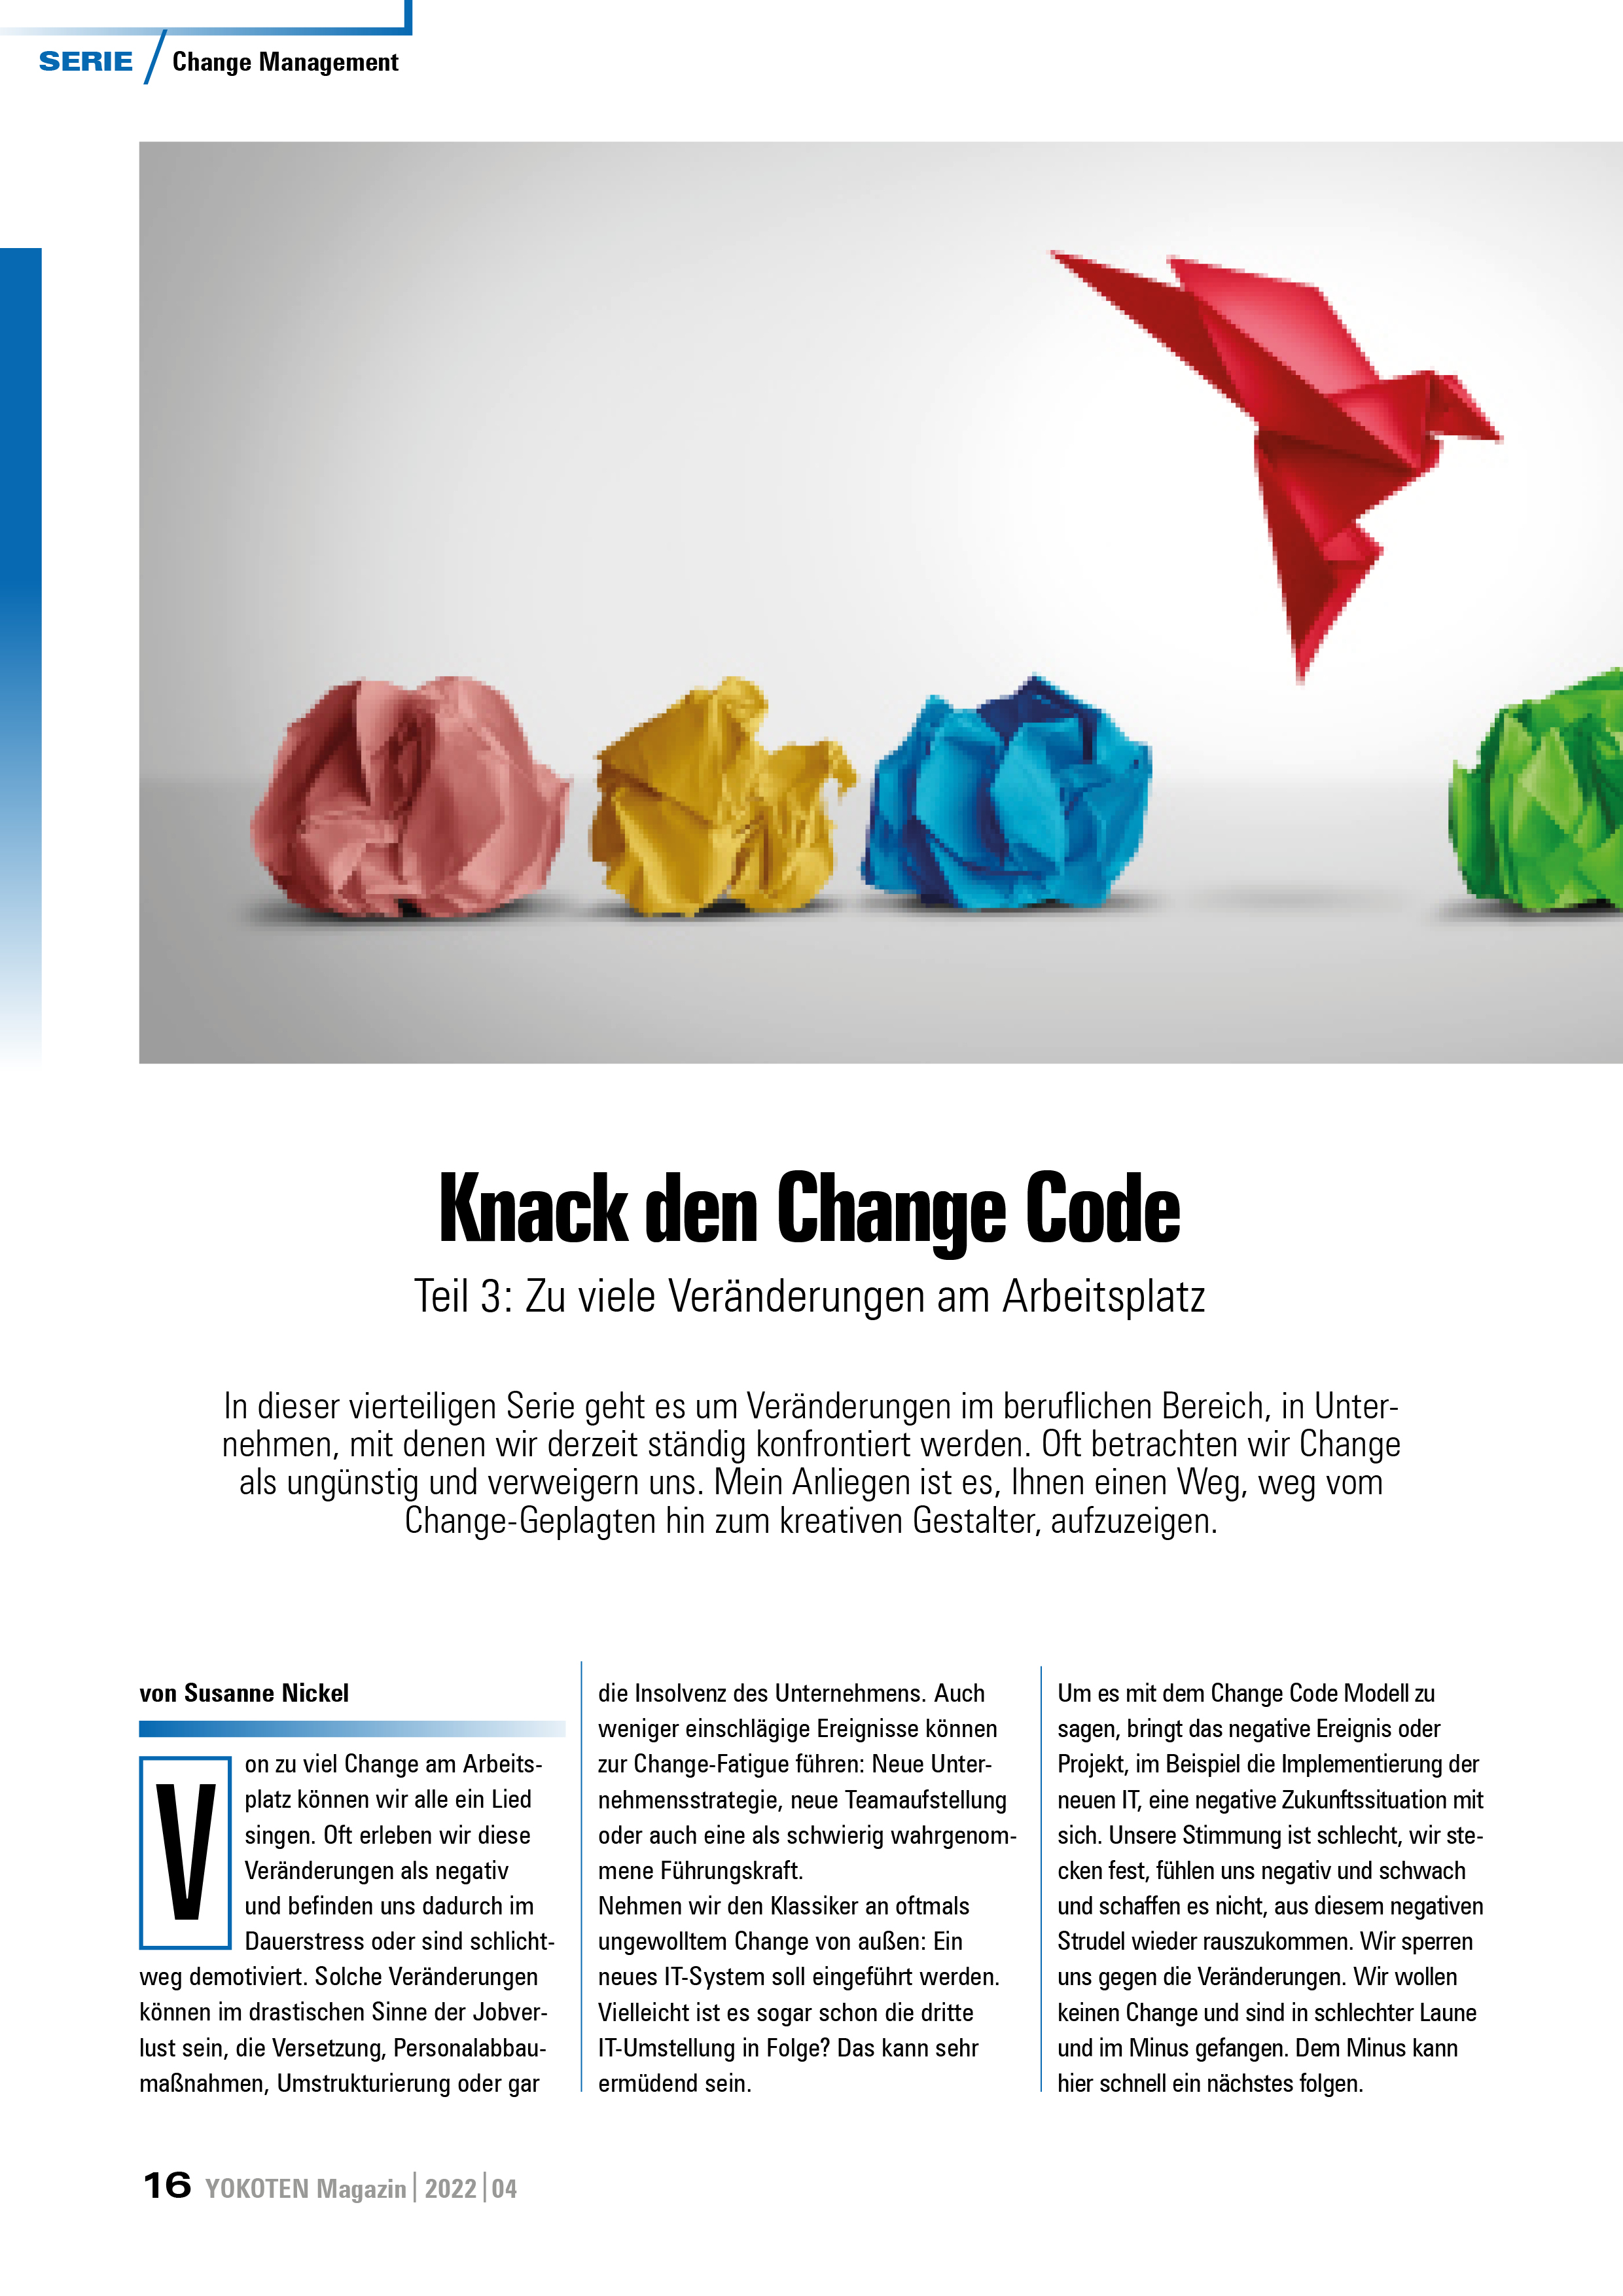 Knack den Change Code - Teil 3 - Artikel aus Fachmagazin YOKOTEN 2022-04